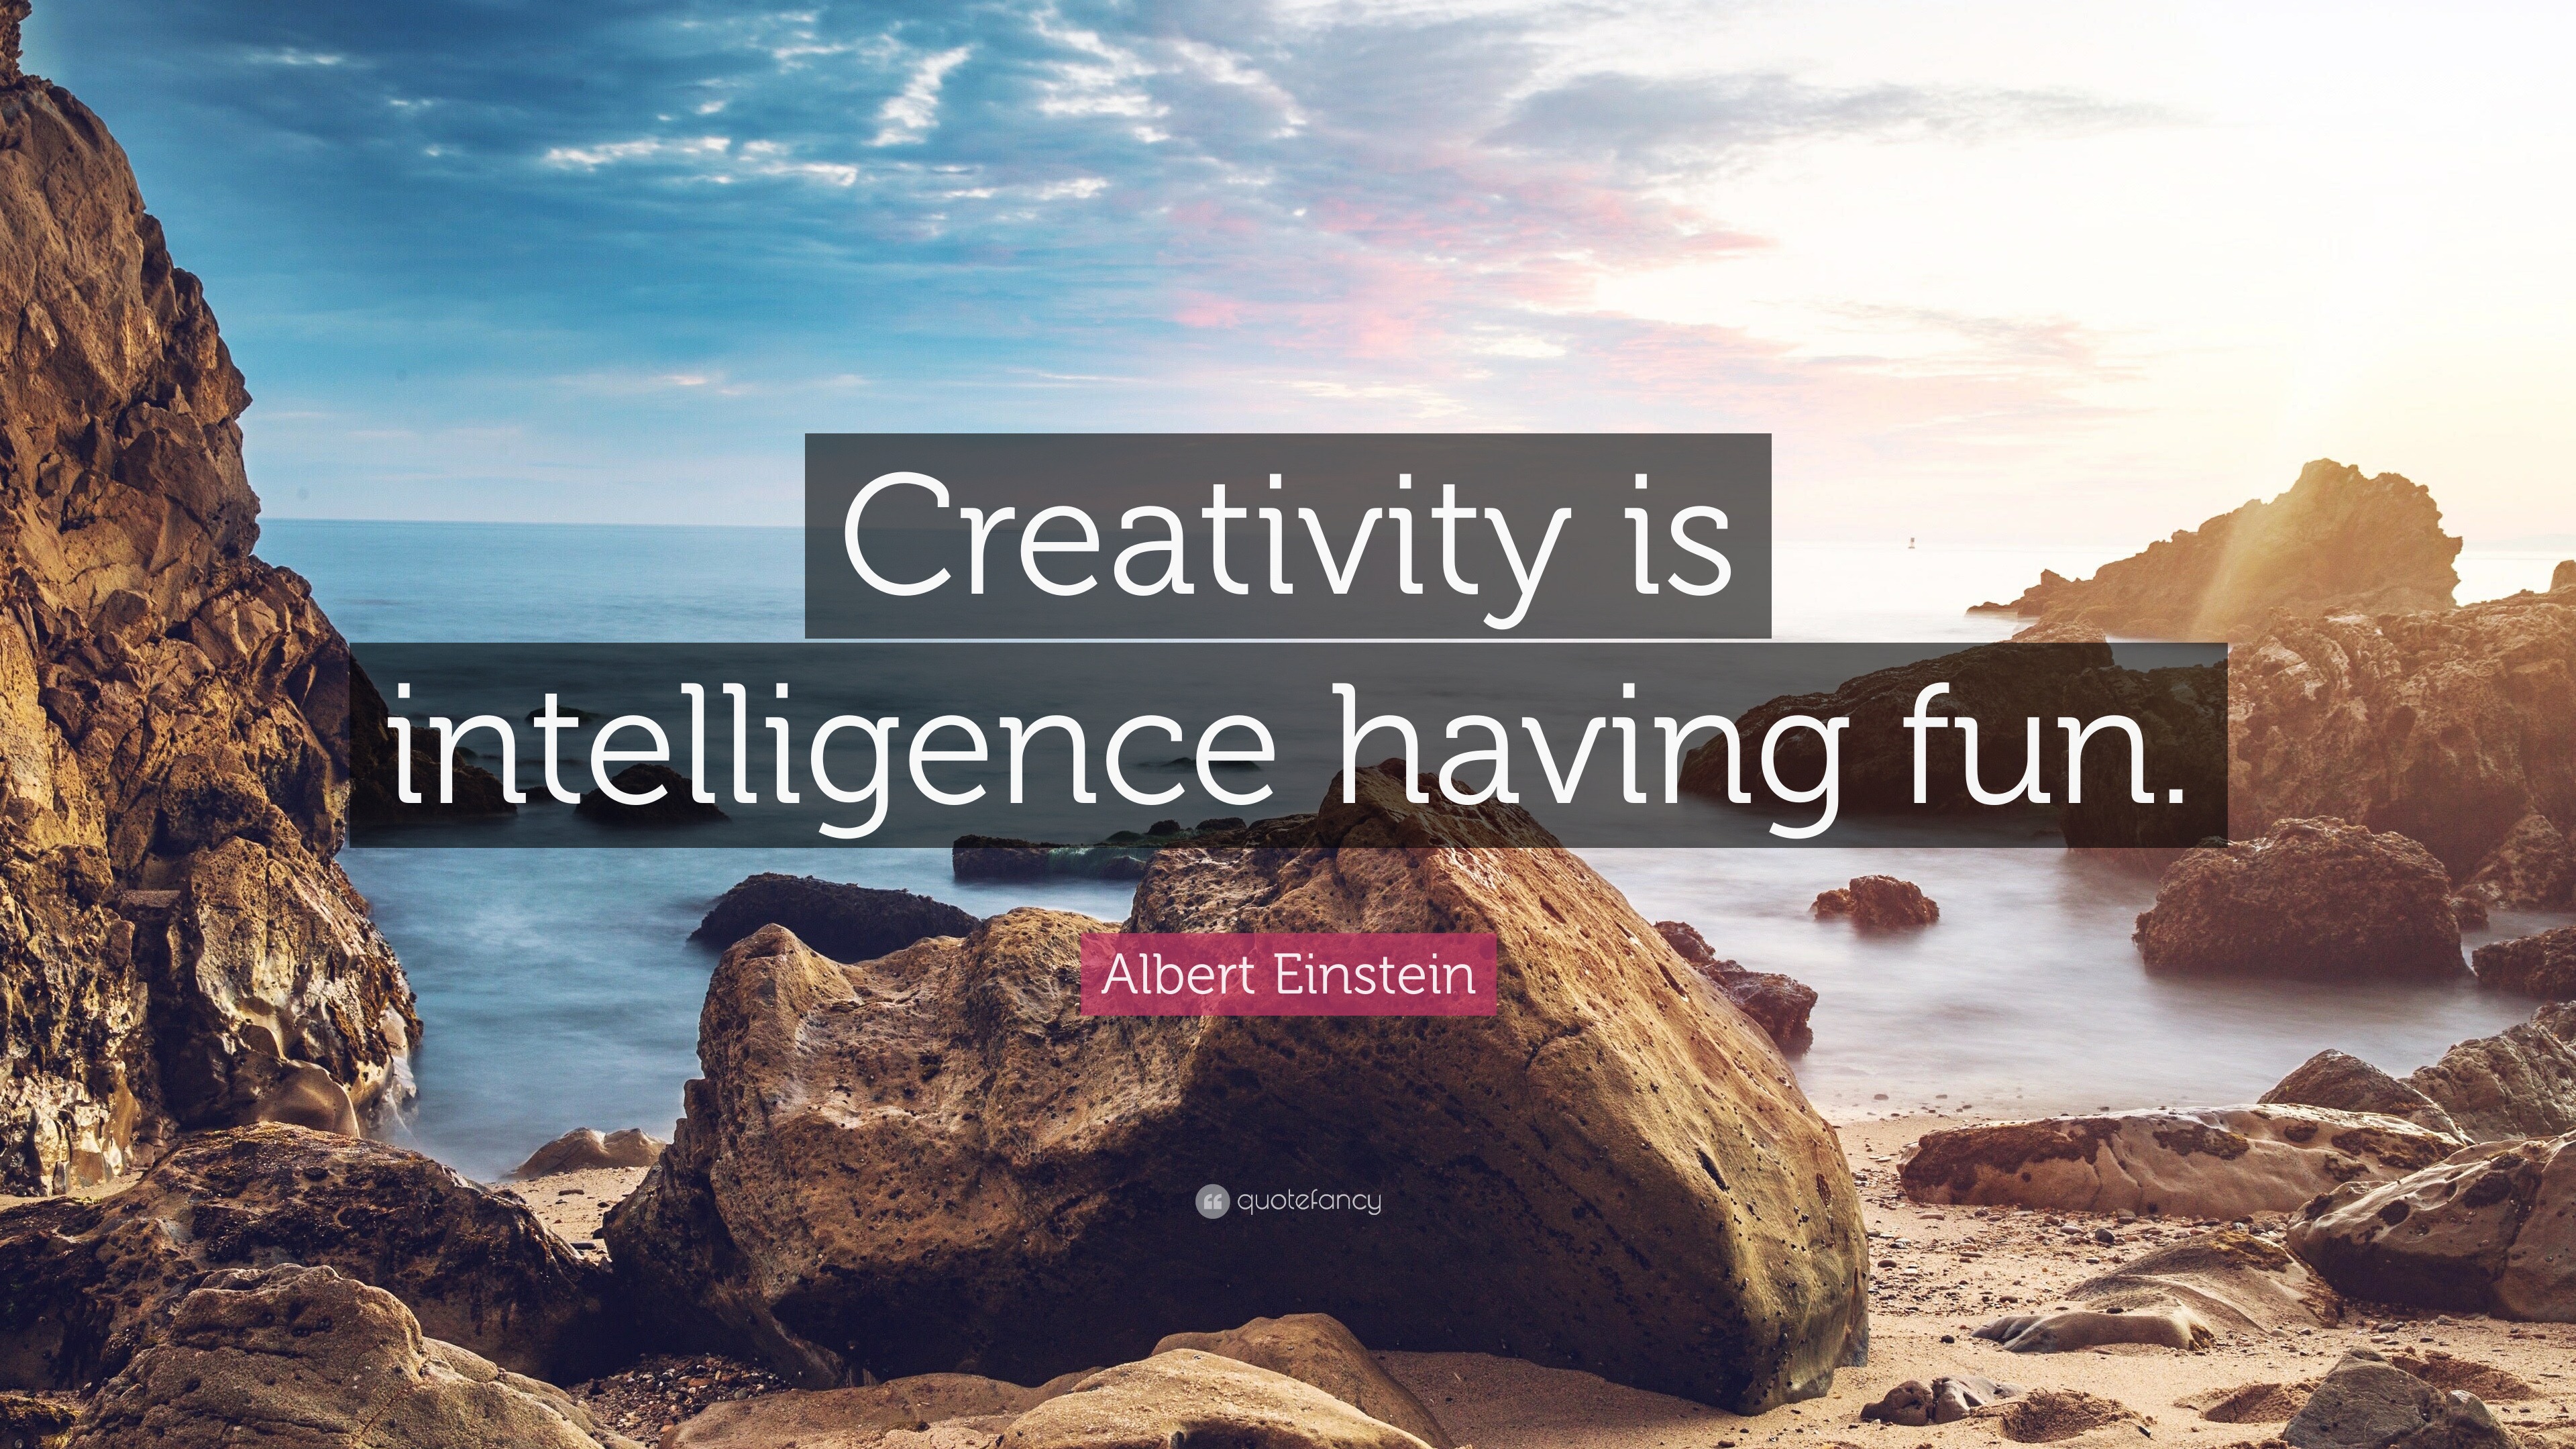 Albert Einstein Quote: "Creativity is intelligence having ...